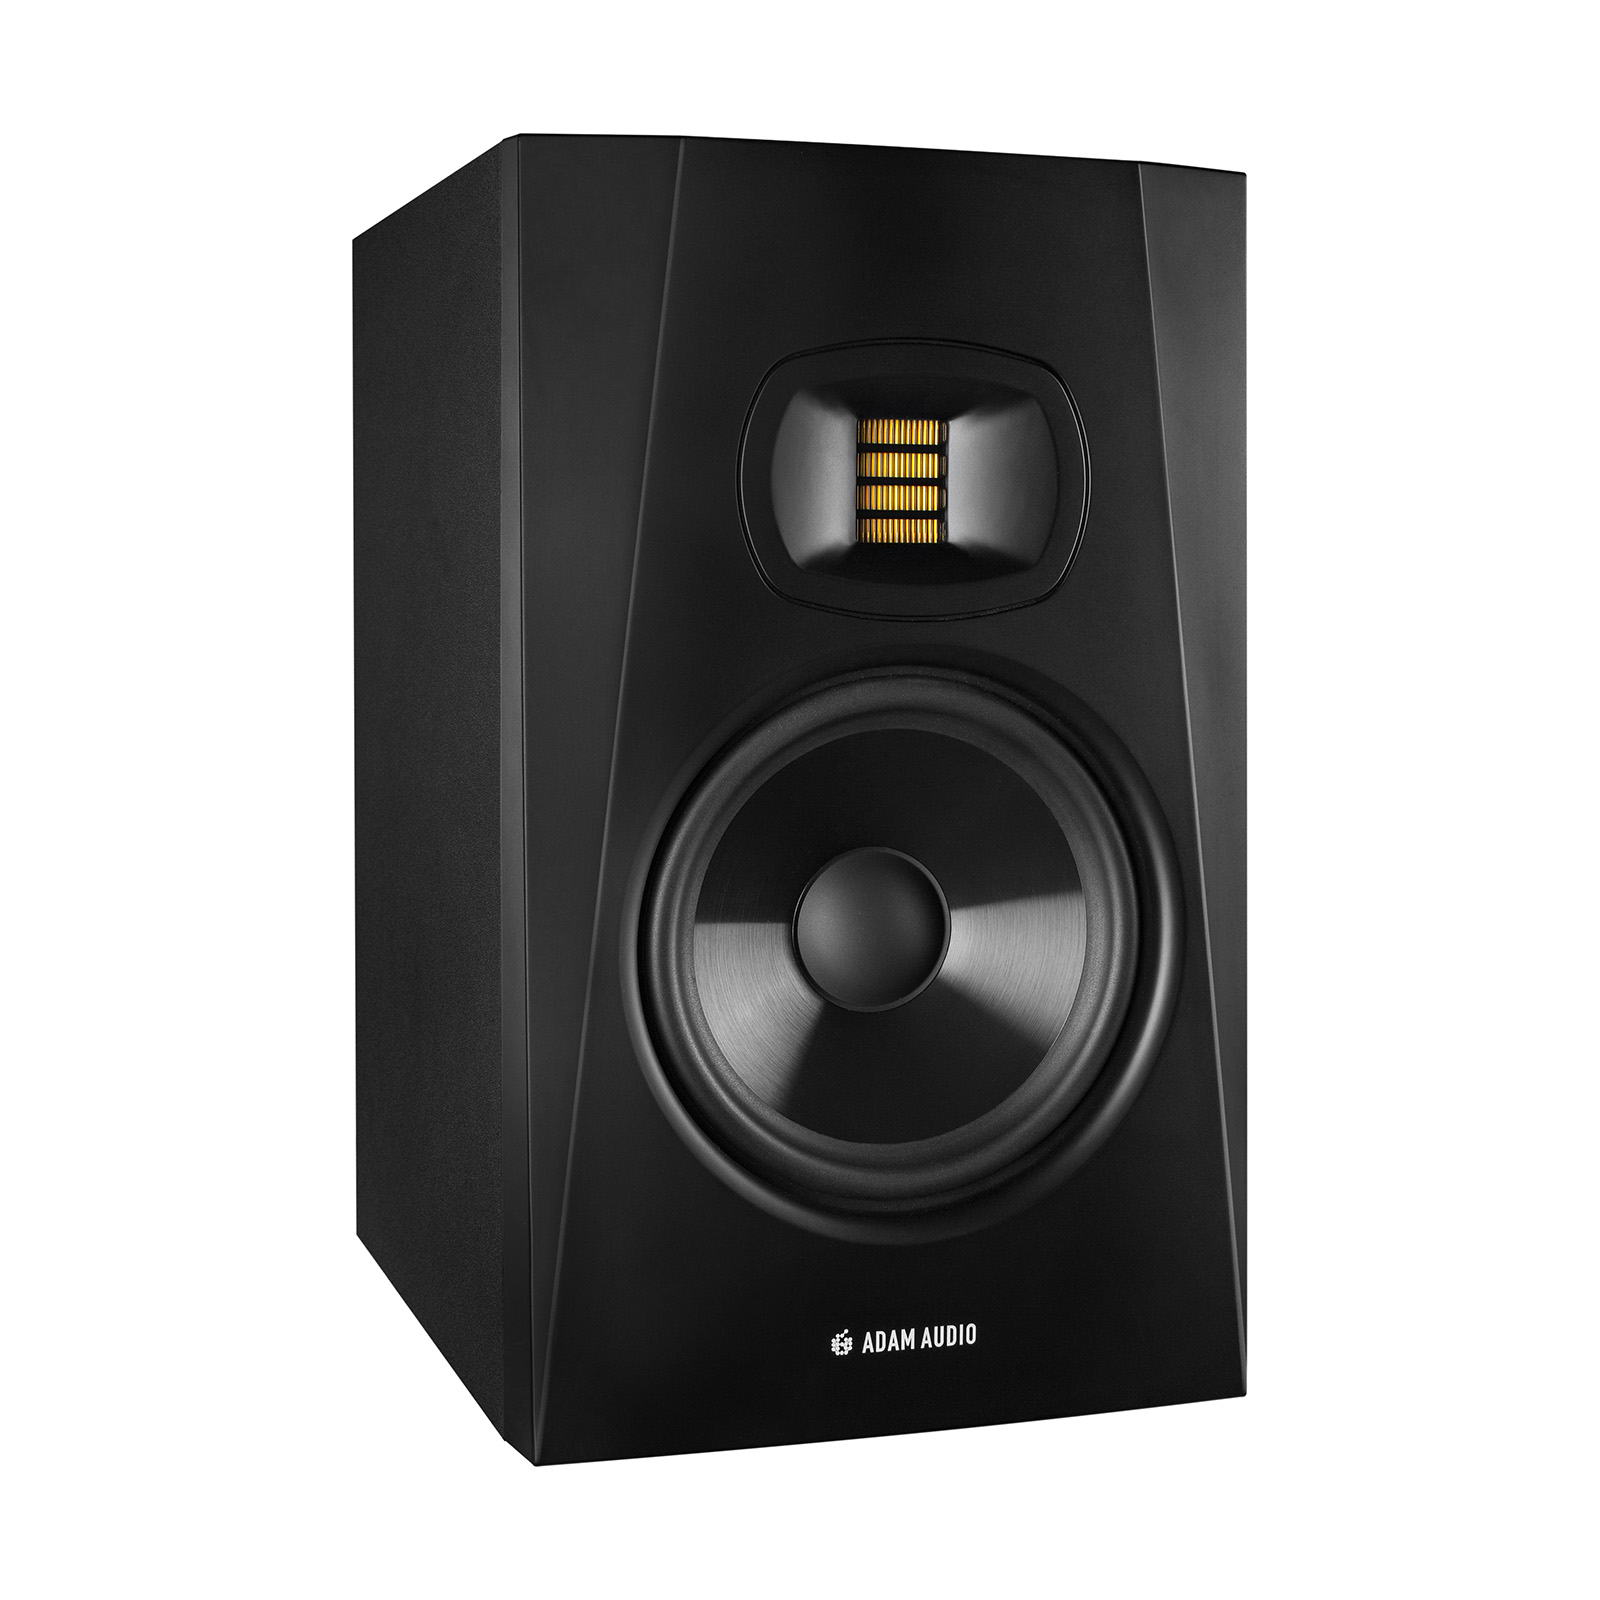 ADAM Audio T7V по цене 34 589.50 ₽